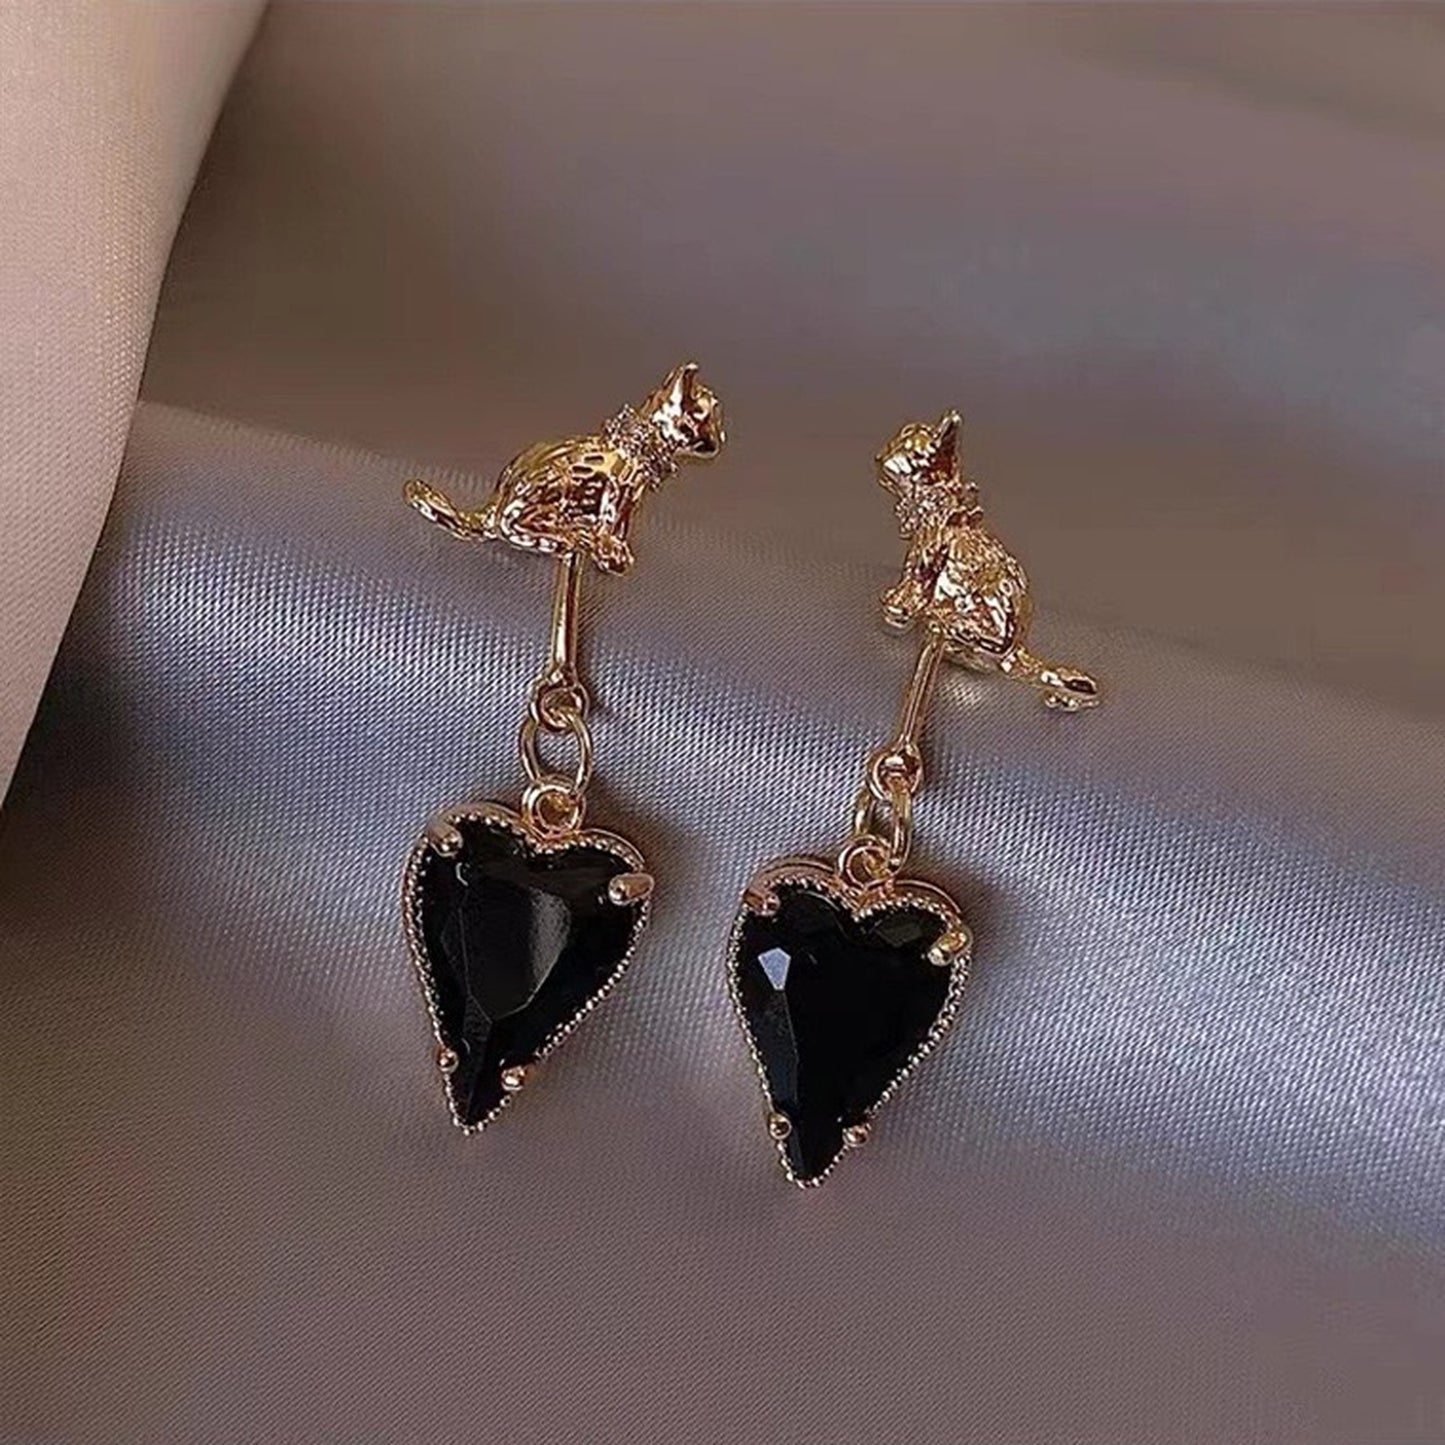 Black Cat Earrings, Gothic Earrings, Kitten Earrings, Black Stone Earrings, Dark Lolita Earrings, Heart Drop Earrings, Unique Earrings, Gift